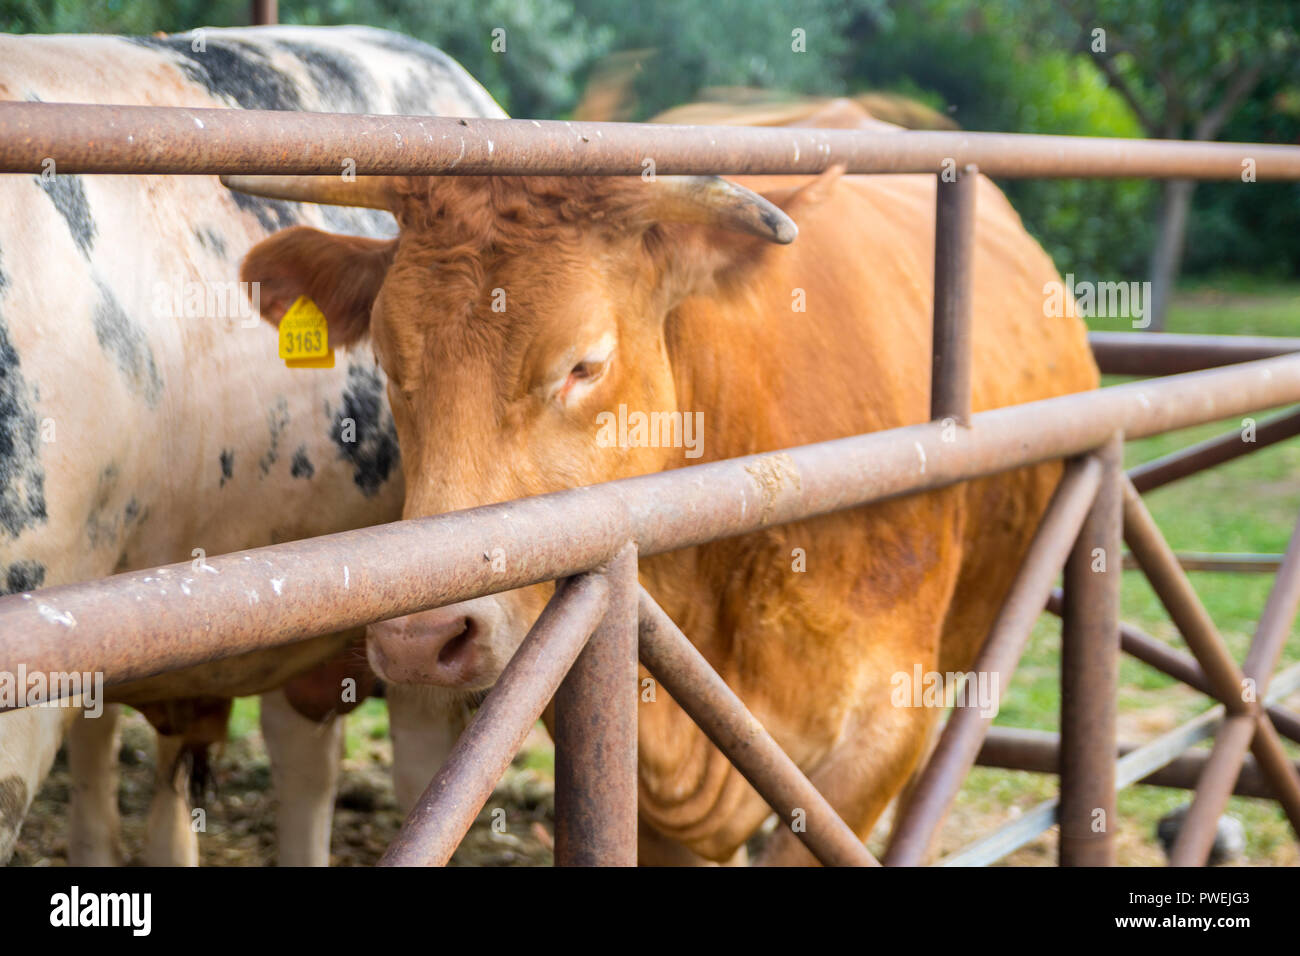 Libre de vache avec tagged oreilles des animaux de ferme, animaux, basse-cour, basse-cour, ferme, concept concept rural, de la nature, de la viande bovine en Italie Banque D'Images